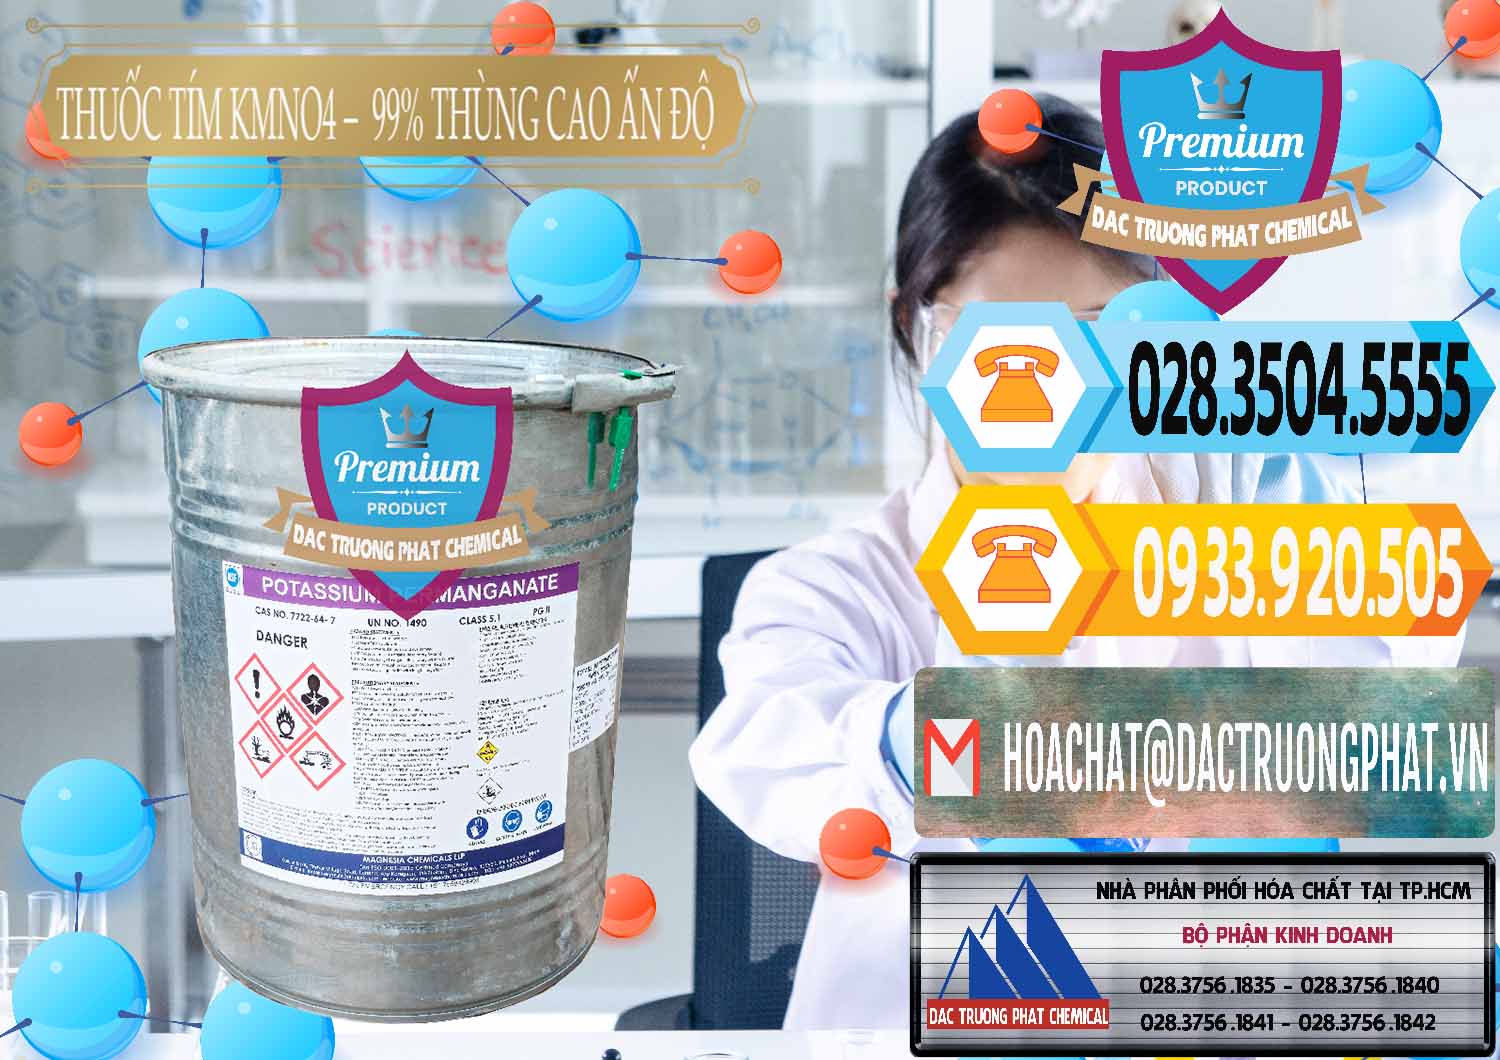 Công ty chuyên nhập khẩu - bán Thuốc Tím - KMNO4 Thùng Cao 99% Magnesia Chemicals Ấn Độ India - 0164 - Nơi cung cấp & phân phối hóa chất tại TP.HCM - hoachattayrua.net